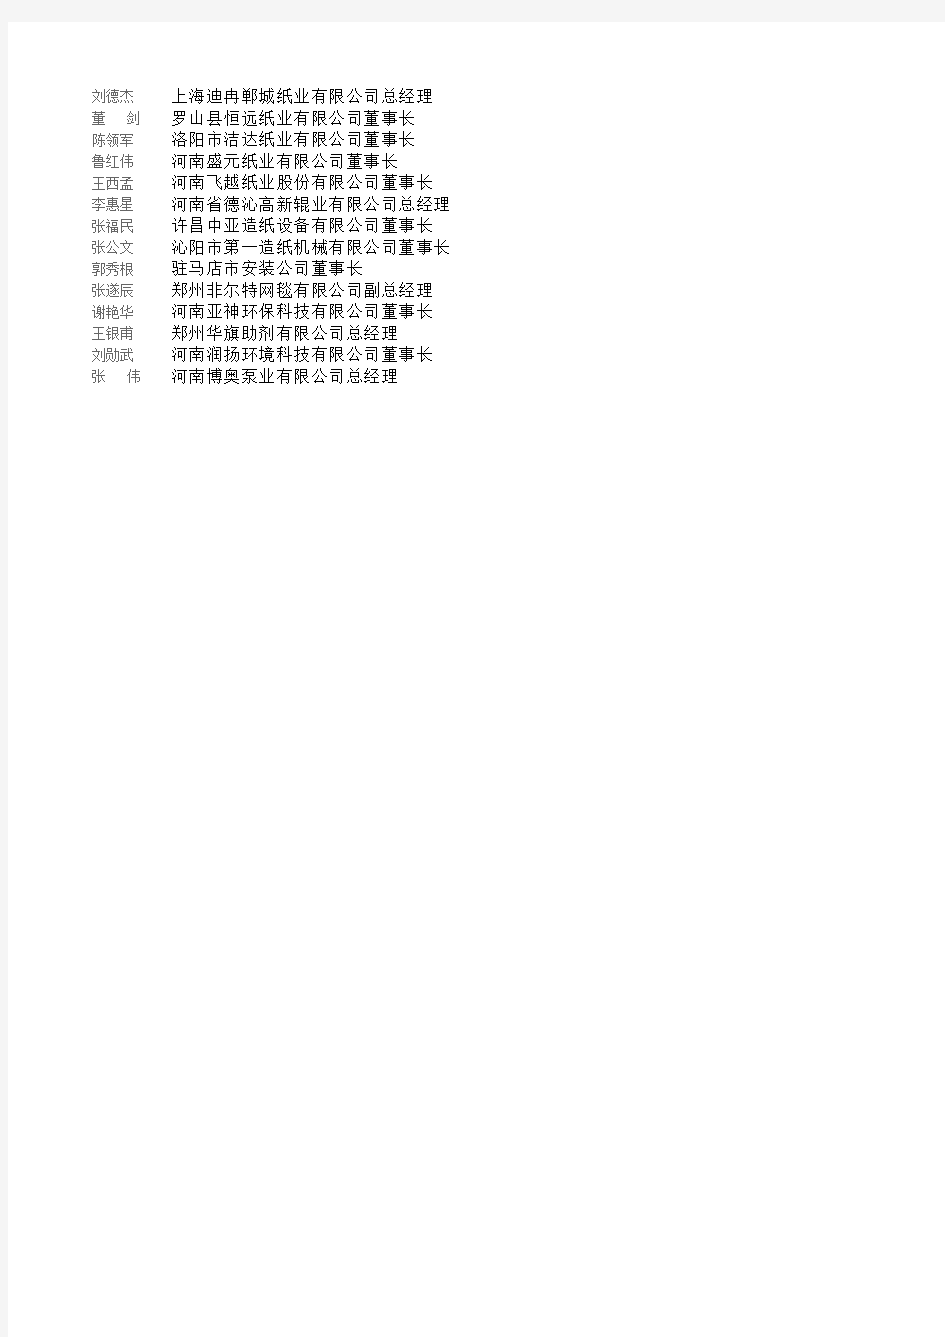 河南省主要造纸企业名录